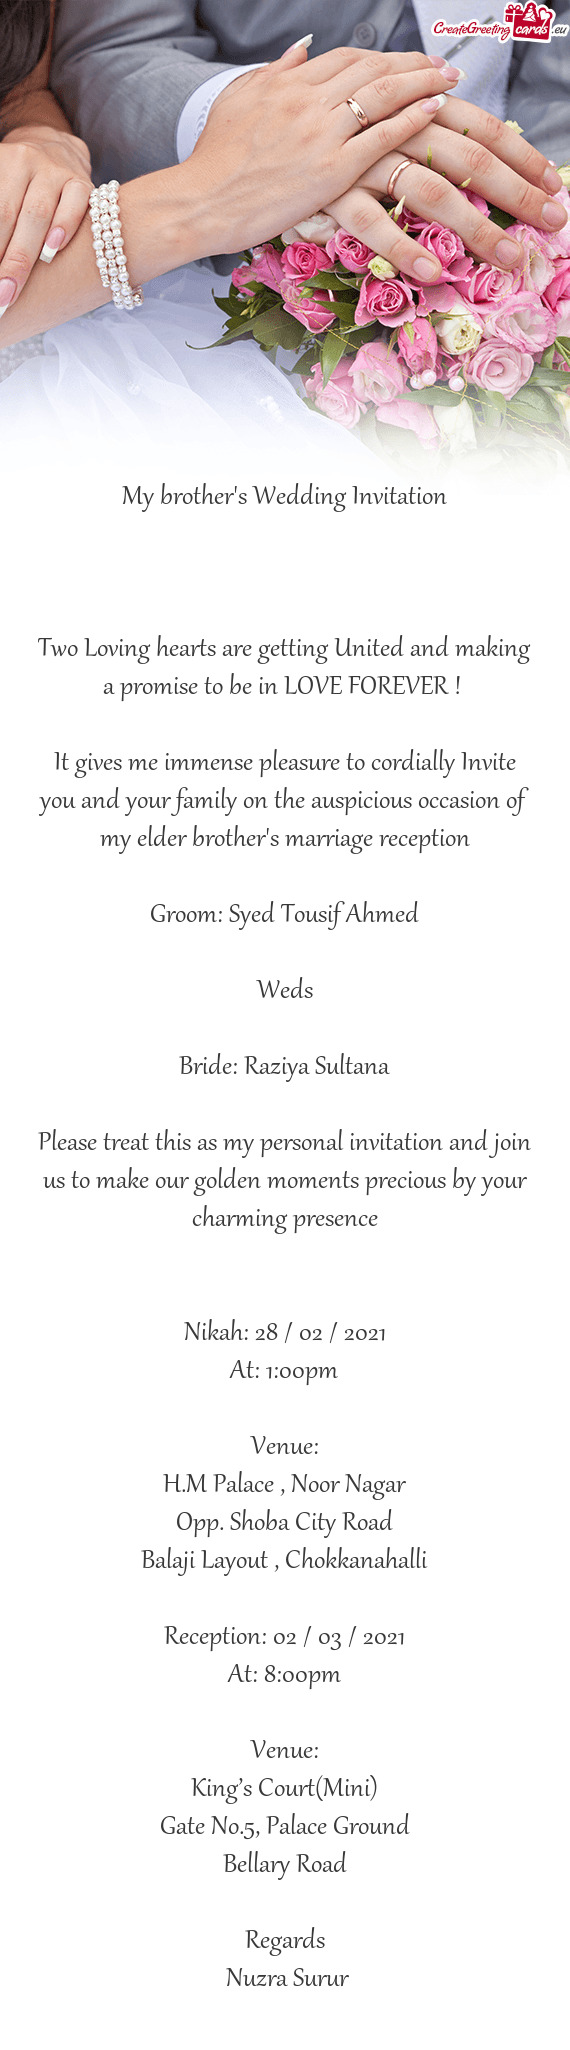 Bride: Raziya Sultana